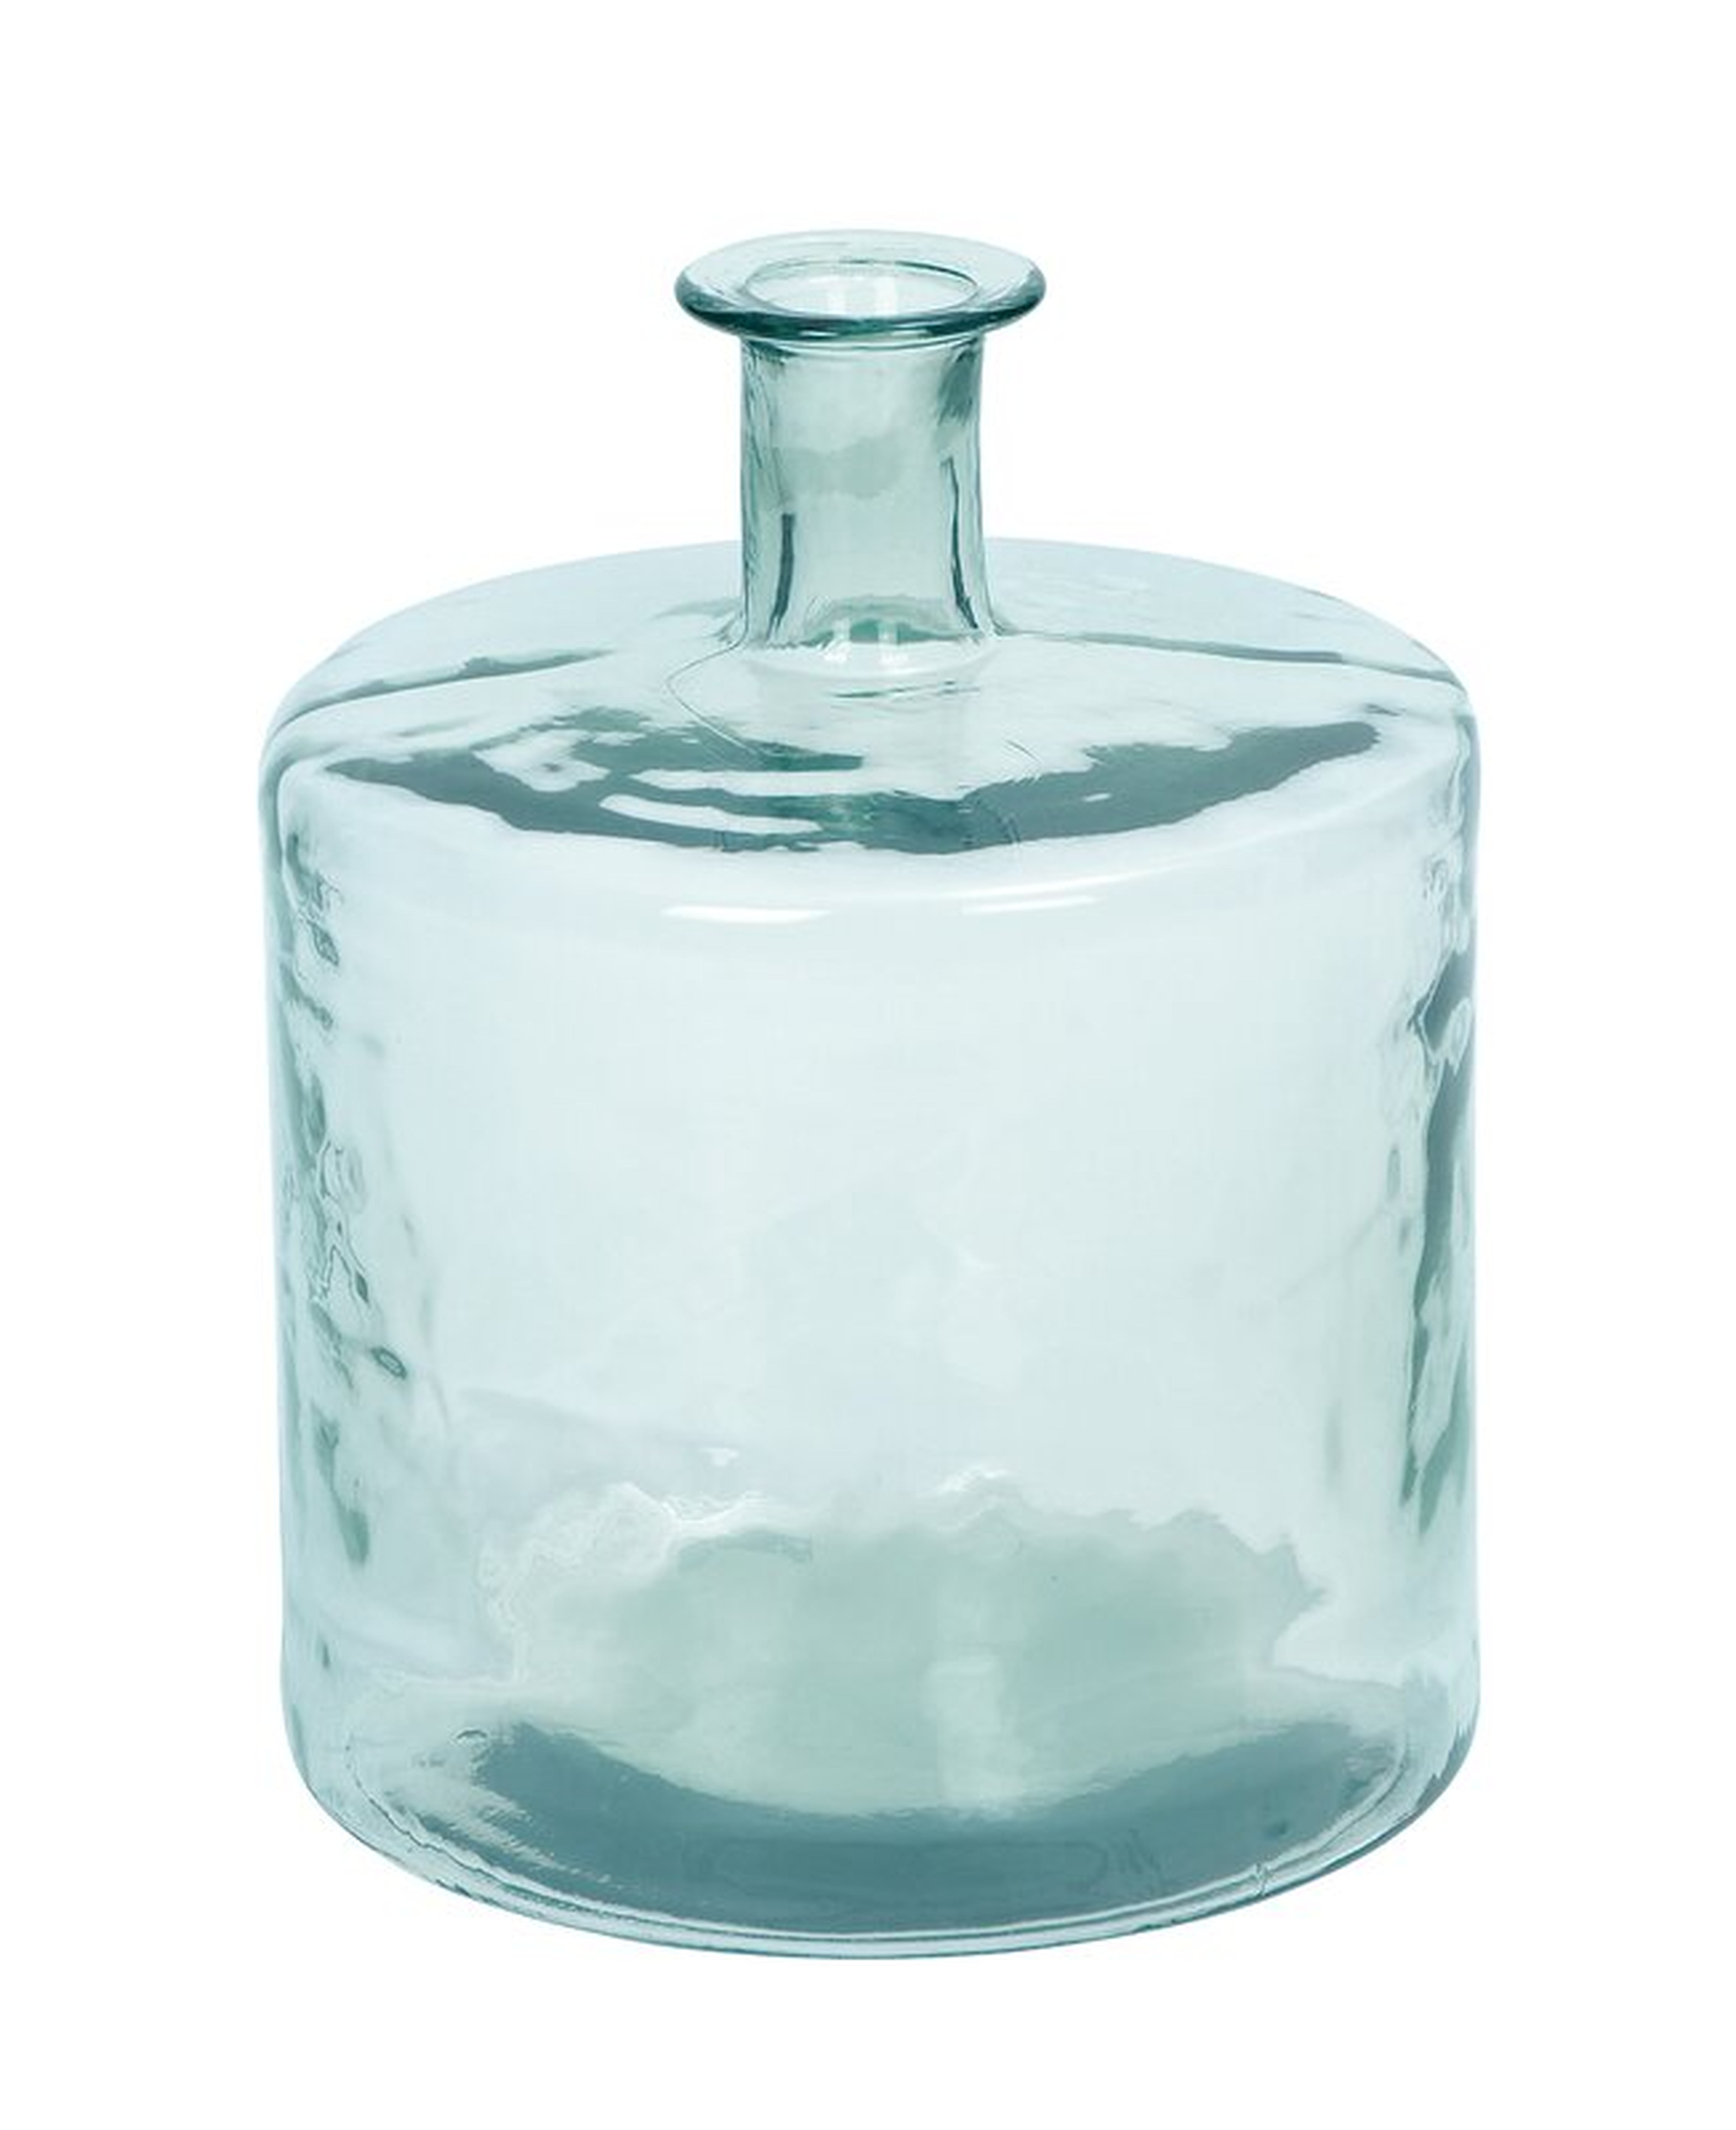 Glass Vase - Wayfair